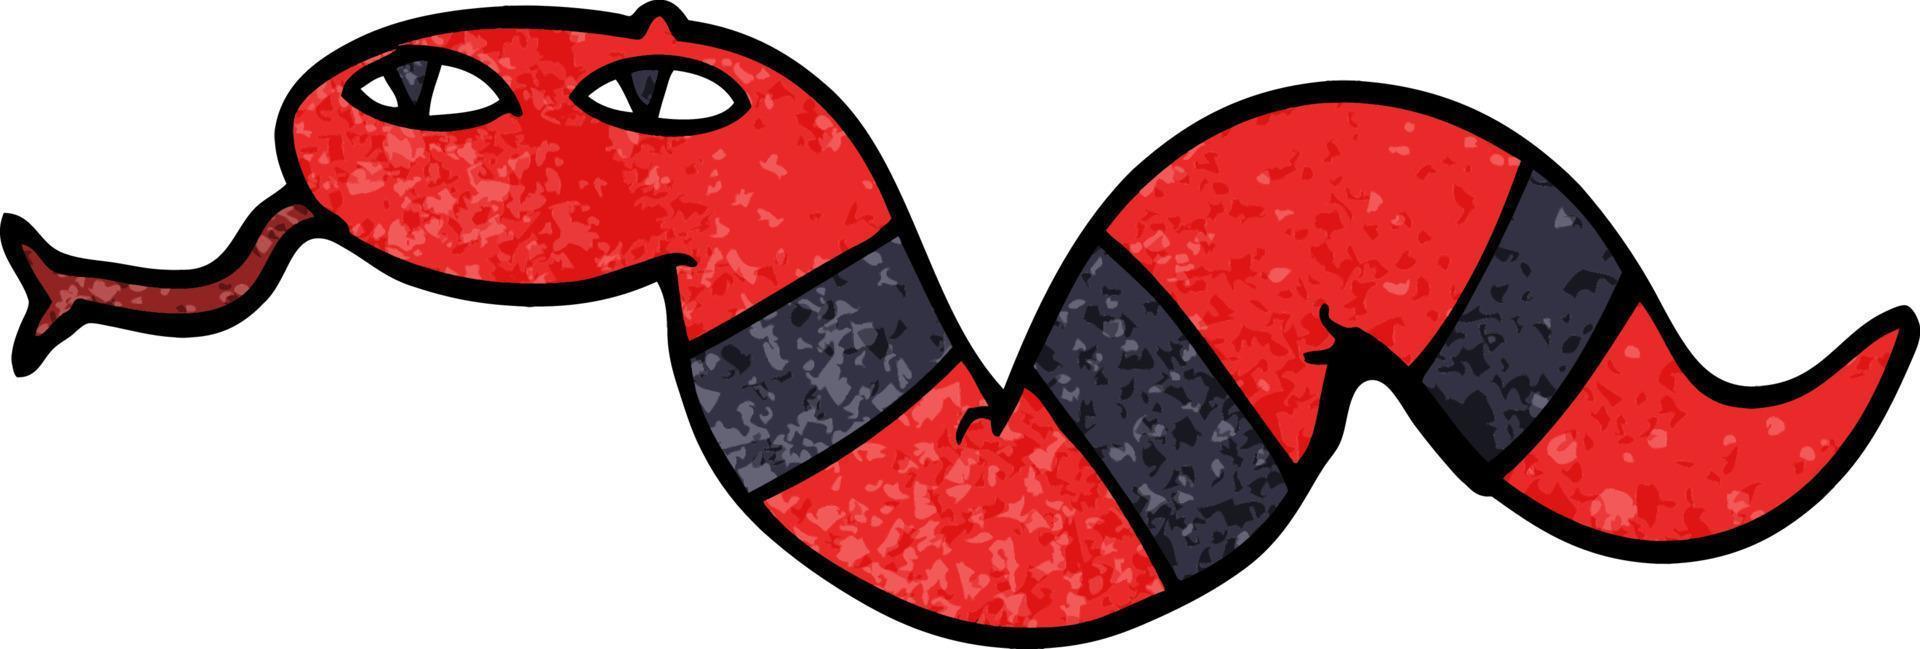 dessin animé doodle d'un serpent vecteur